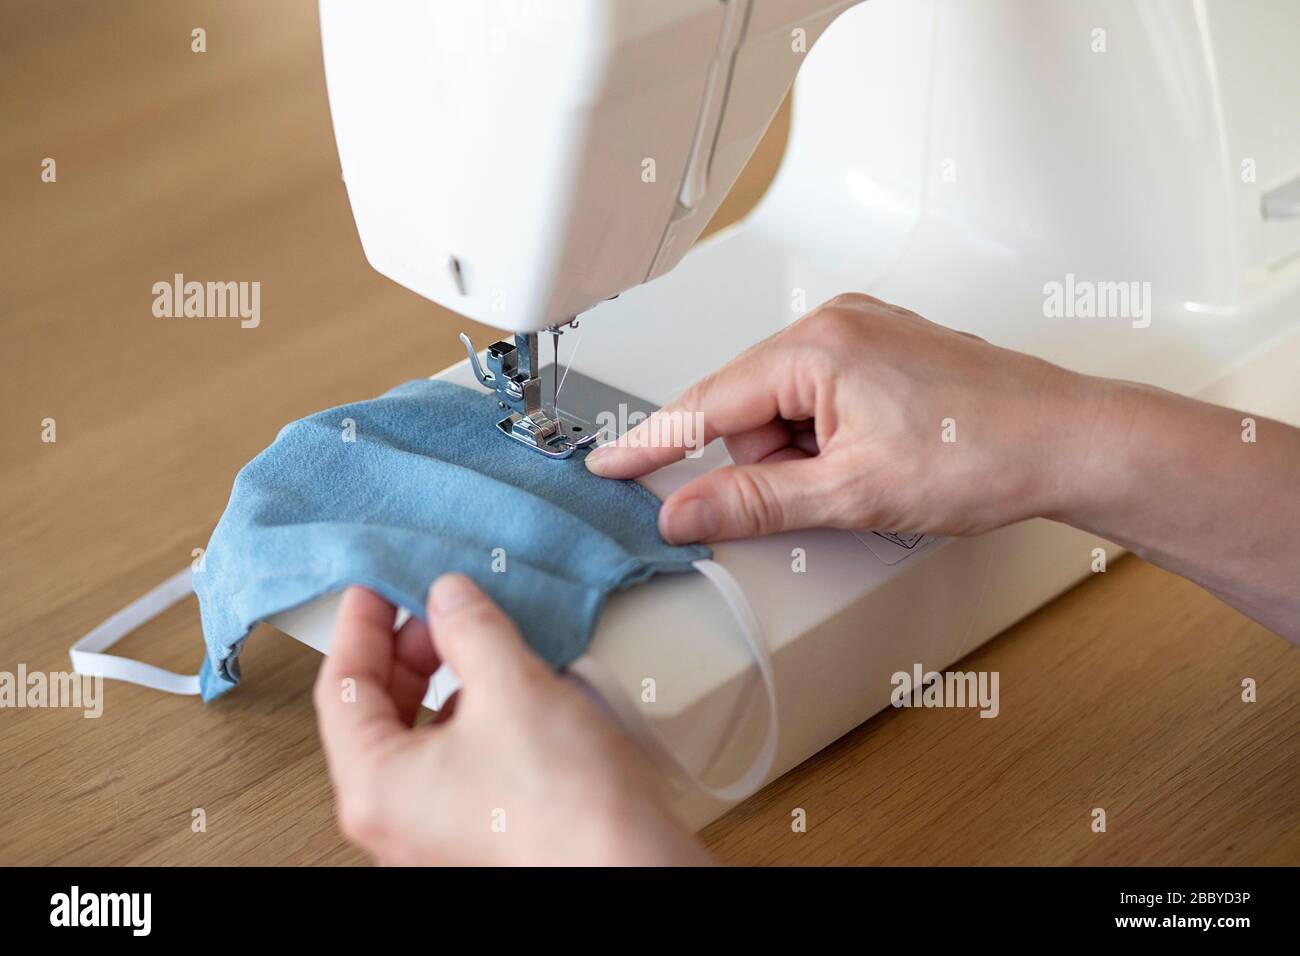 proceso de trabajo, máscaras de costura para la protección, manos de la mujer coser de cara en la máquina de costura debido a la de material la crisis covid-19